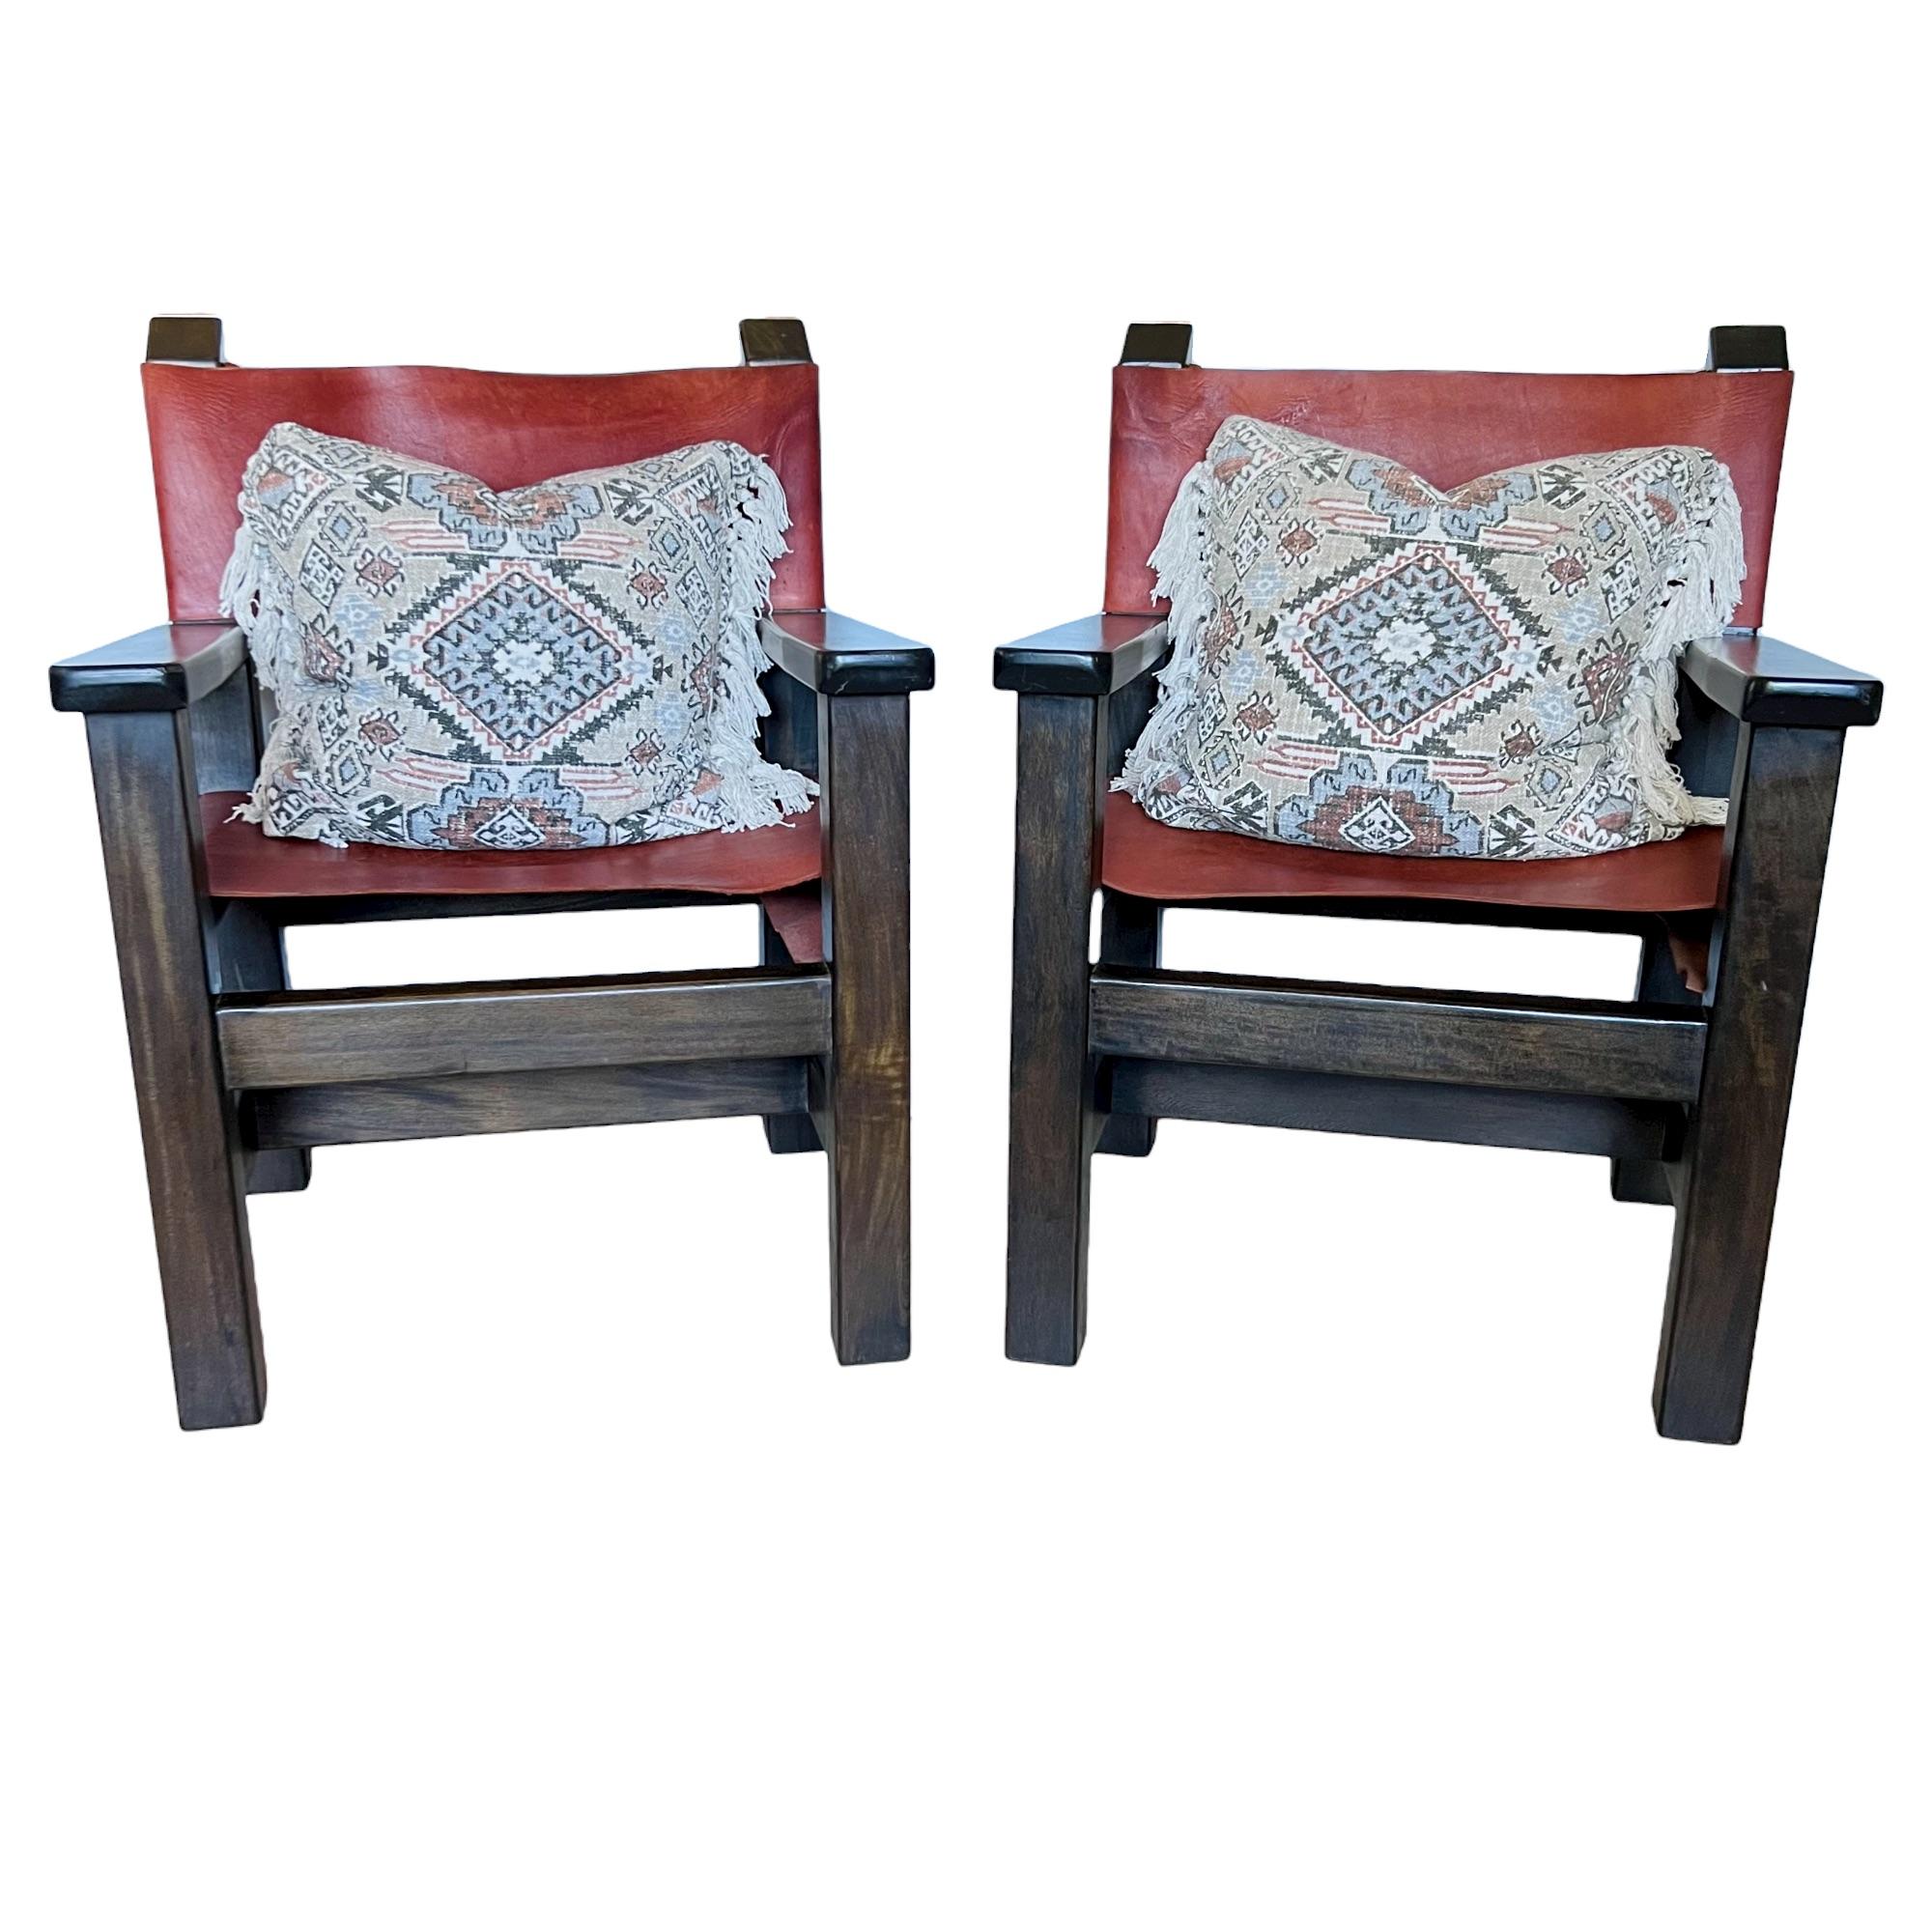 Ein Paar große, robuste spanische Sessel im brutalistischen Regiestil aus dem späten 20. Dunkle Holzrahmen mit Rückenlehnen und Sitzen aus cognacfarbenem Sattelleder.

Abmessungen: 26,75